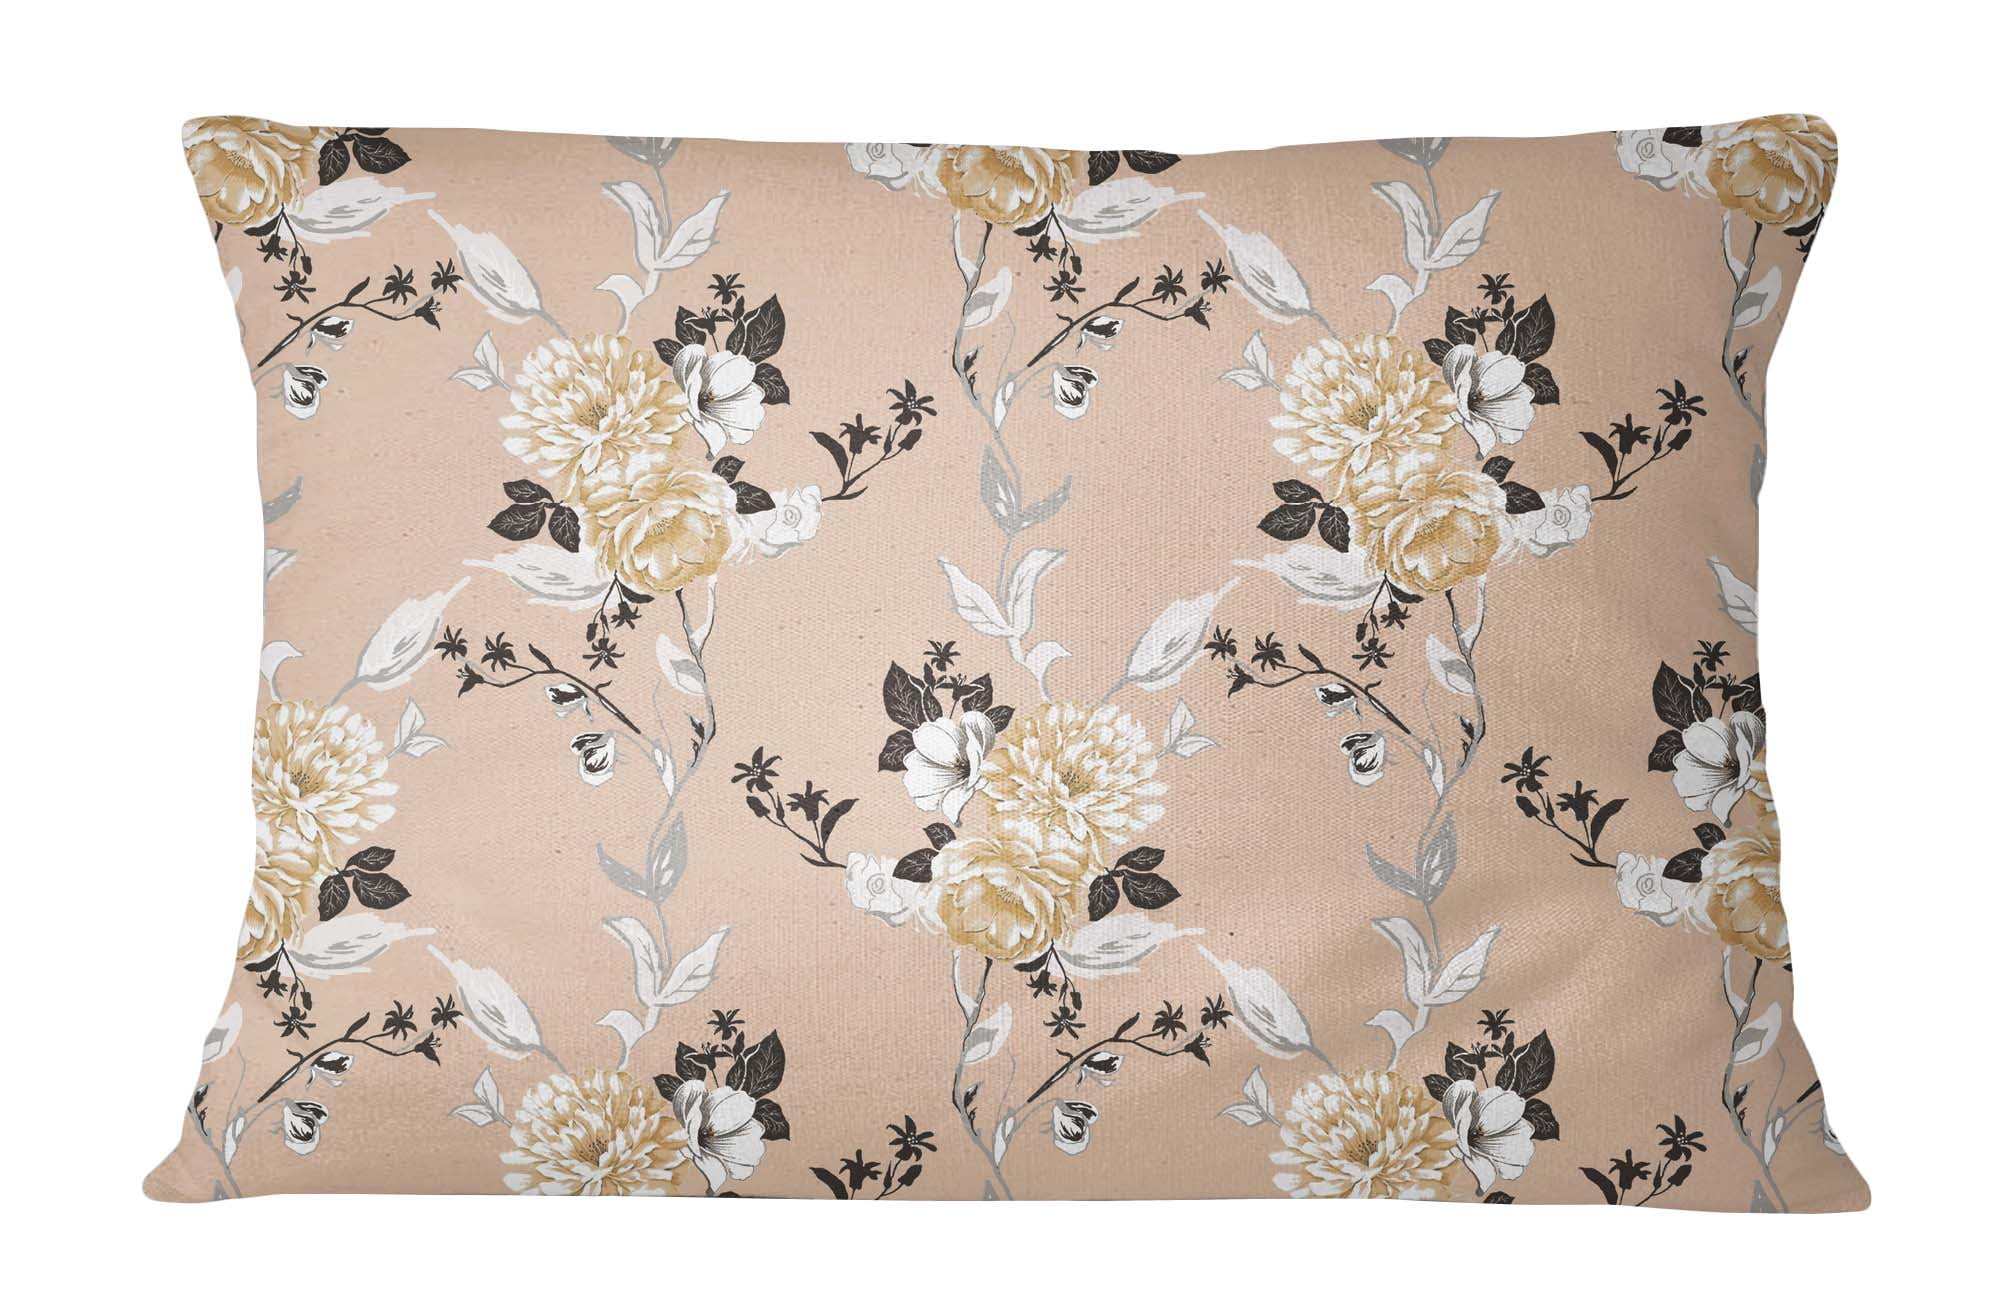 S4Sassy Floral Print Cotton Poplin Home Décor 1 Pair Pillow Sham Cushion Cover 